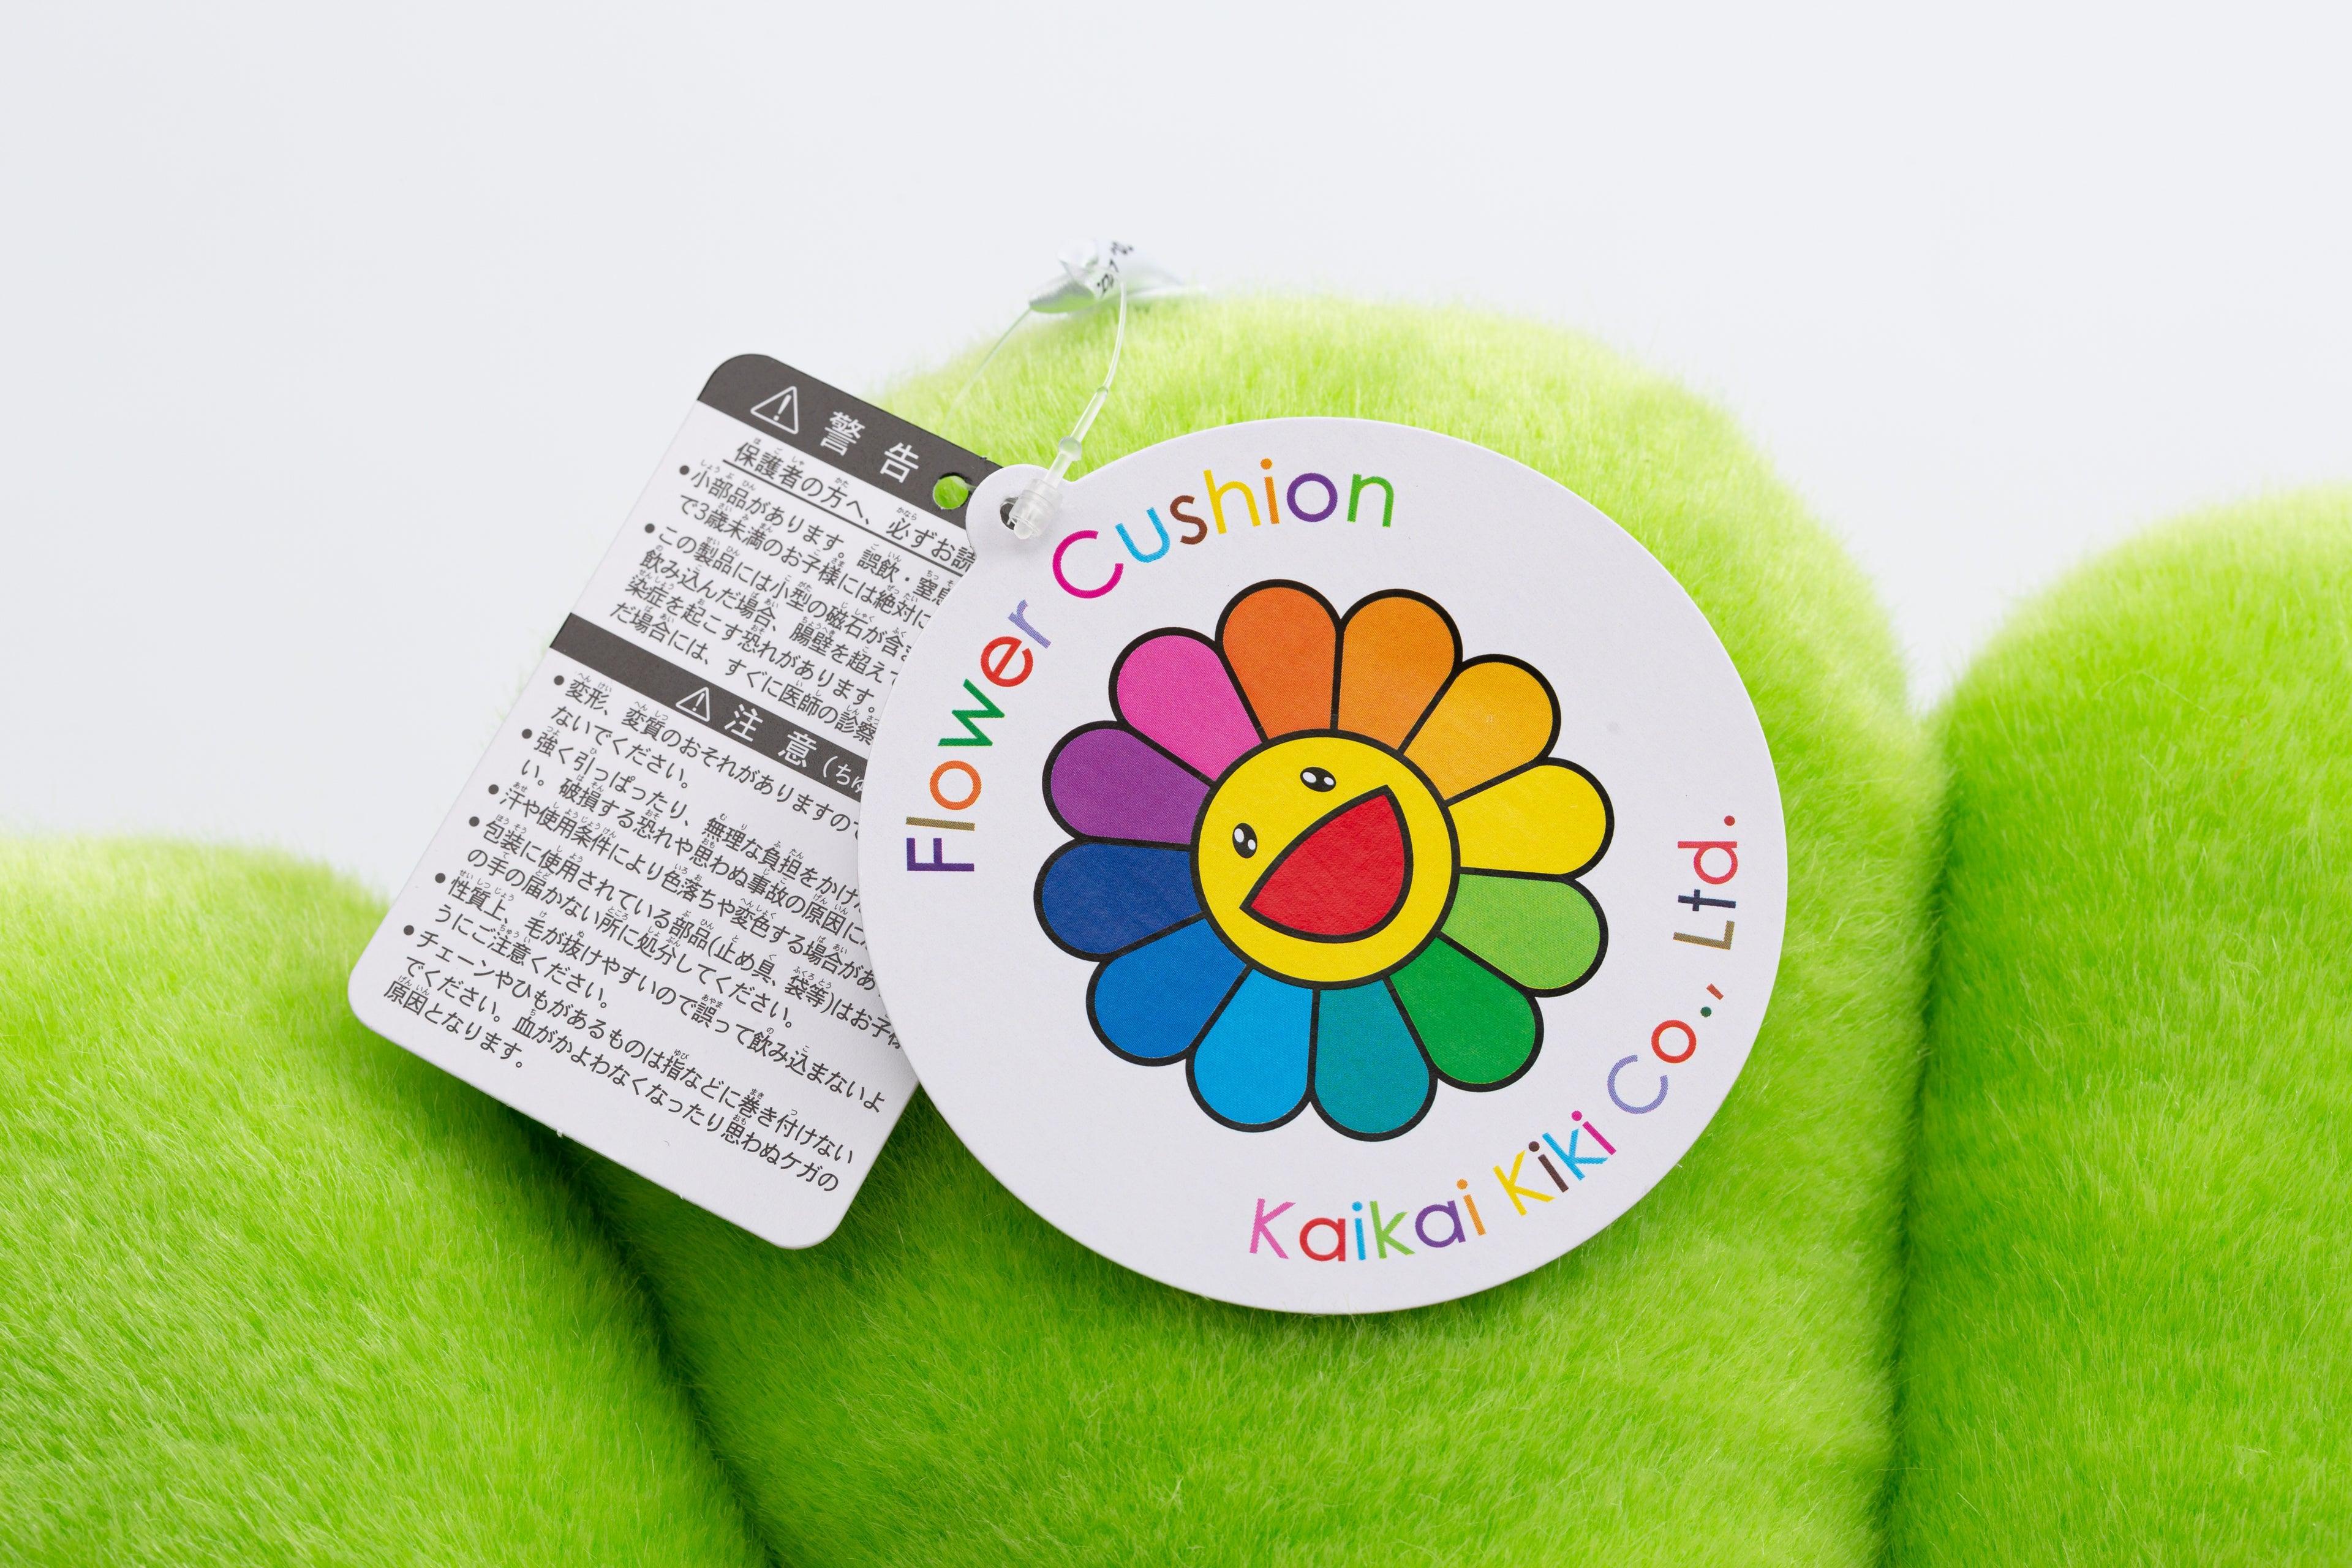 Takashi Murakami, Kaikai Kiki, Takashi Murakami X Kaikai Kiki, Flower  Backpack (2023), Available for Sale